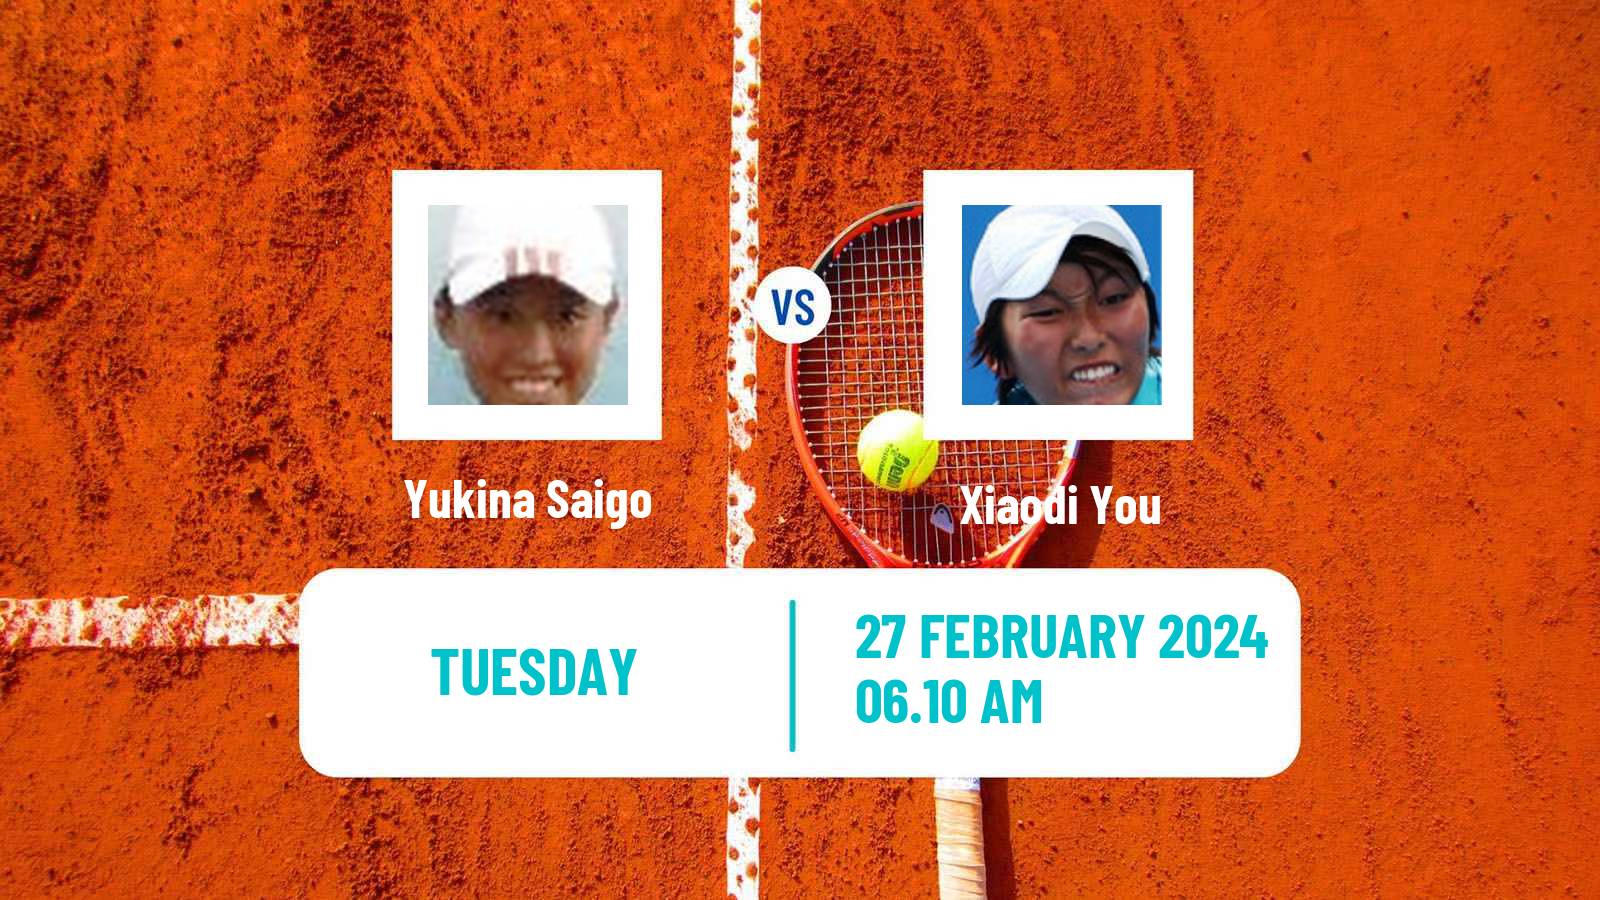 Tennis ITF W50 Pretoria 2 Women Yukina Saigo - Xiaodi You